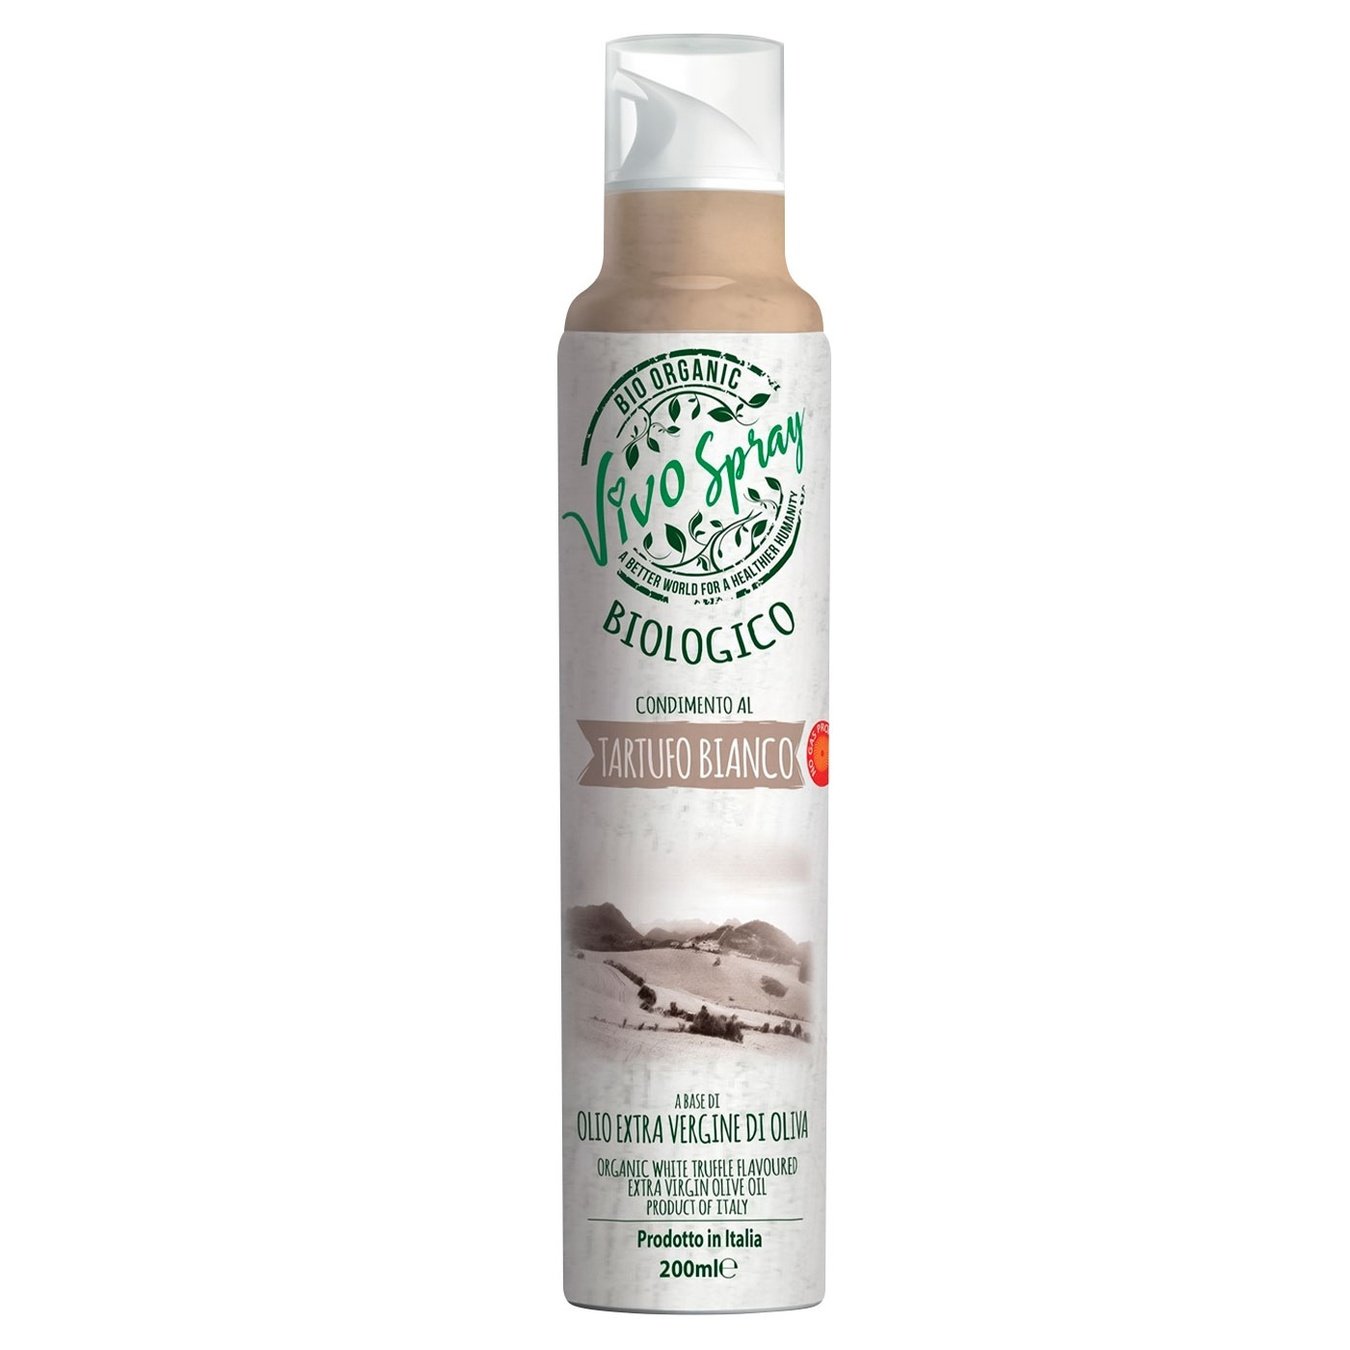 Оливковое масло Vivo Spray Extra Virgin органическое с ароматом белого трюфеля спрей 200 мл - фото 1